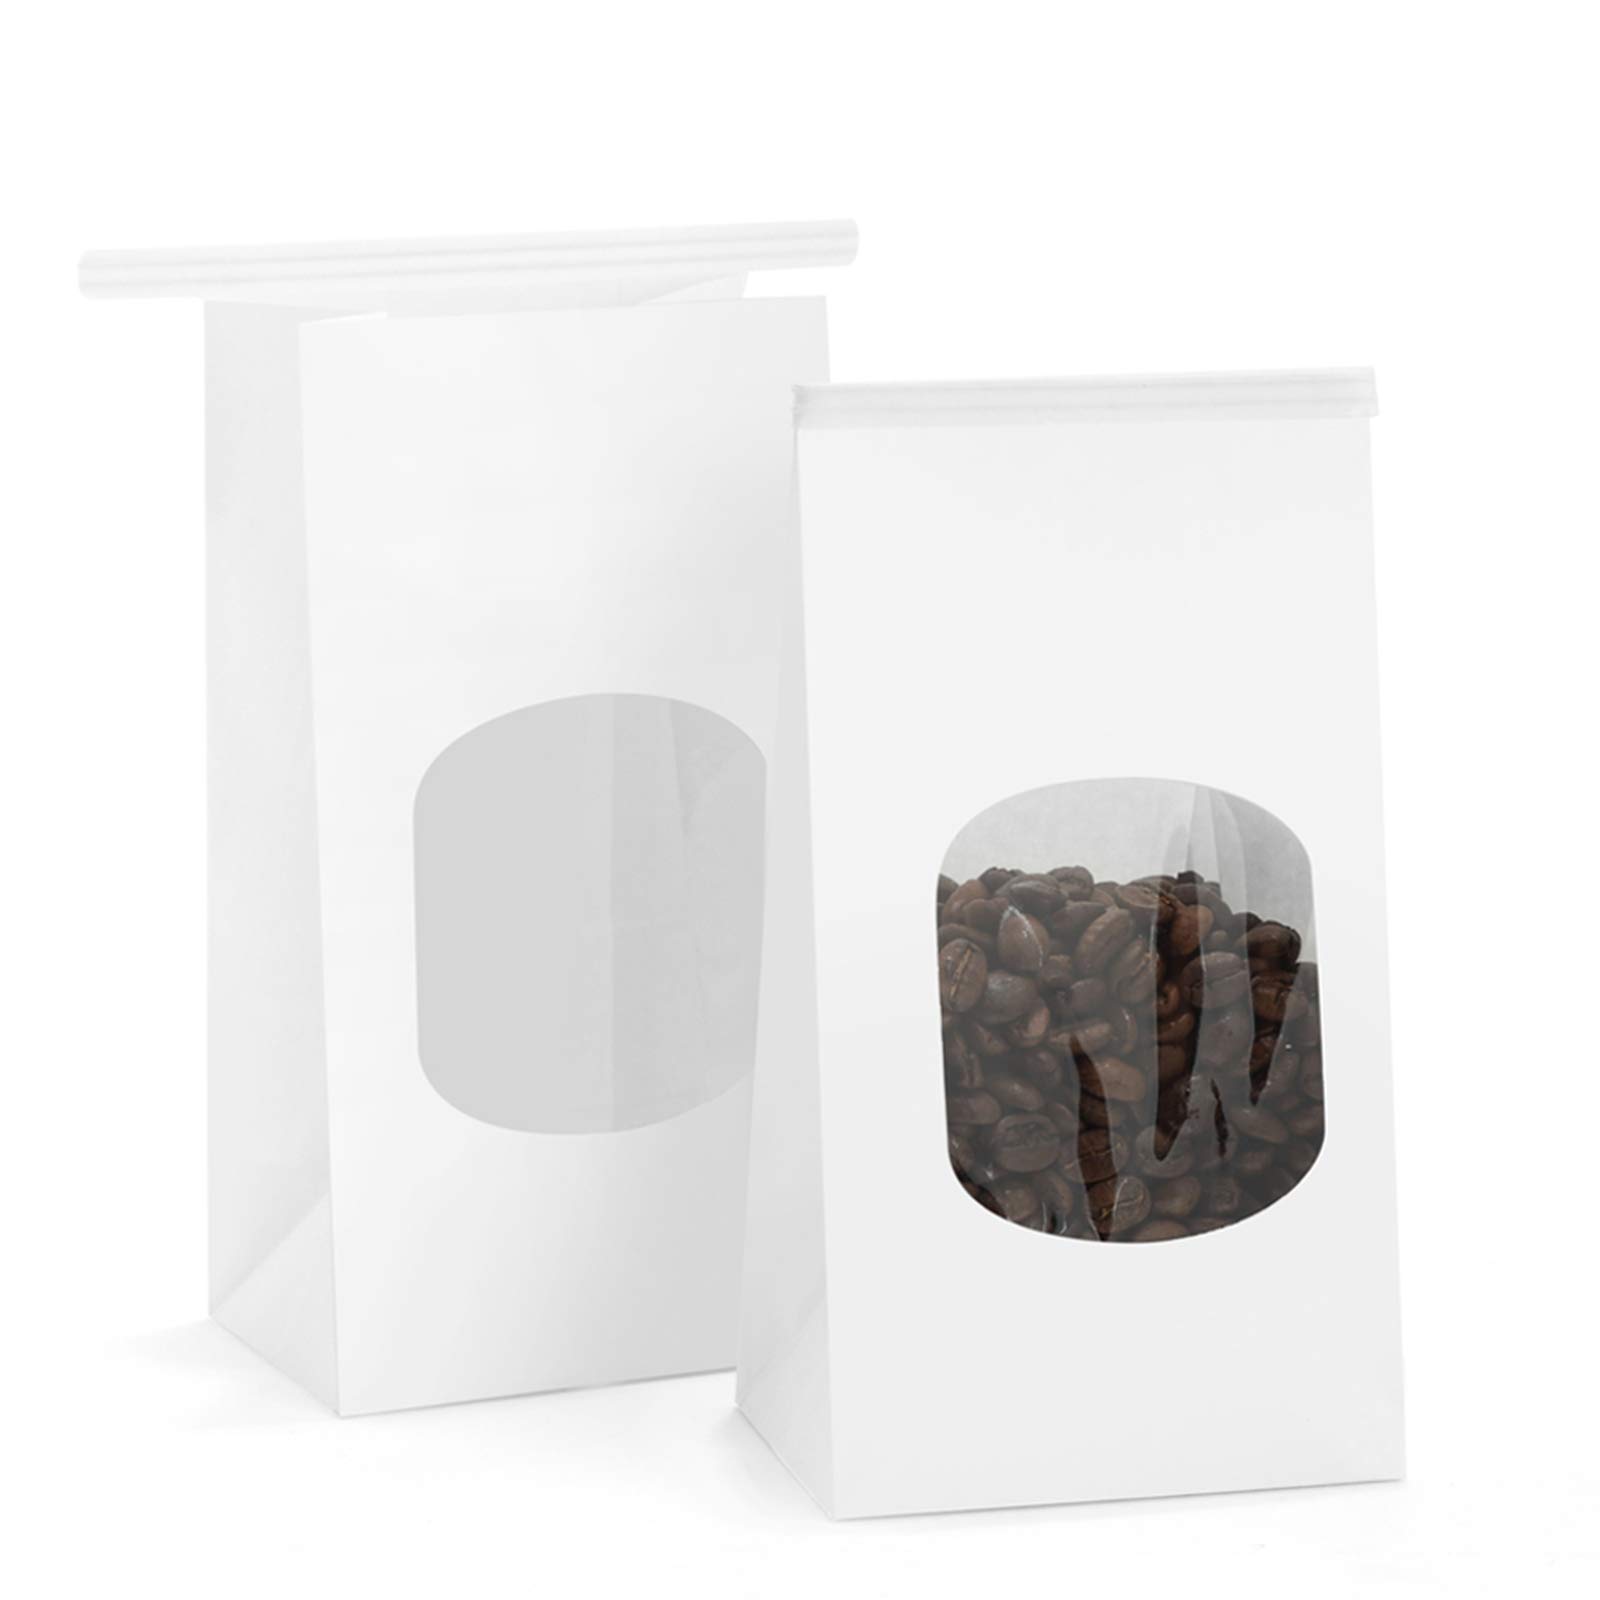 Sacs de boulangerie KDG avec fenêtre Petits sacs en papier kraft Sacs de rangement alimentaire verrouillage à fermeture éclair pour les produits d'emballage réutilisables